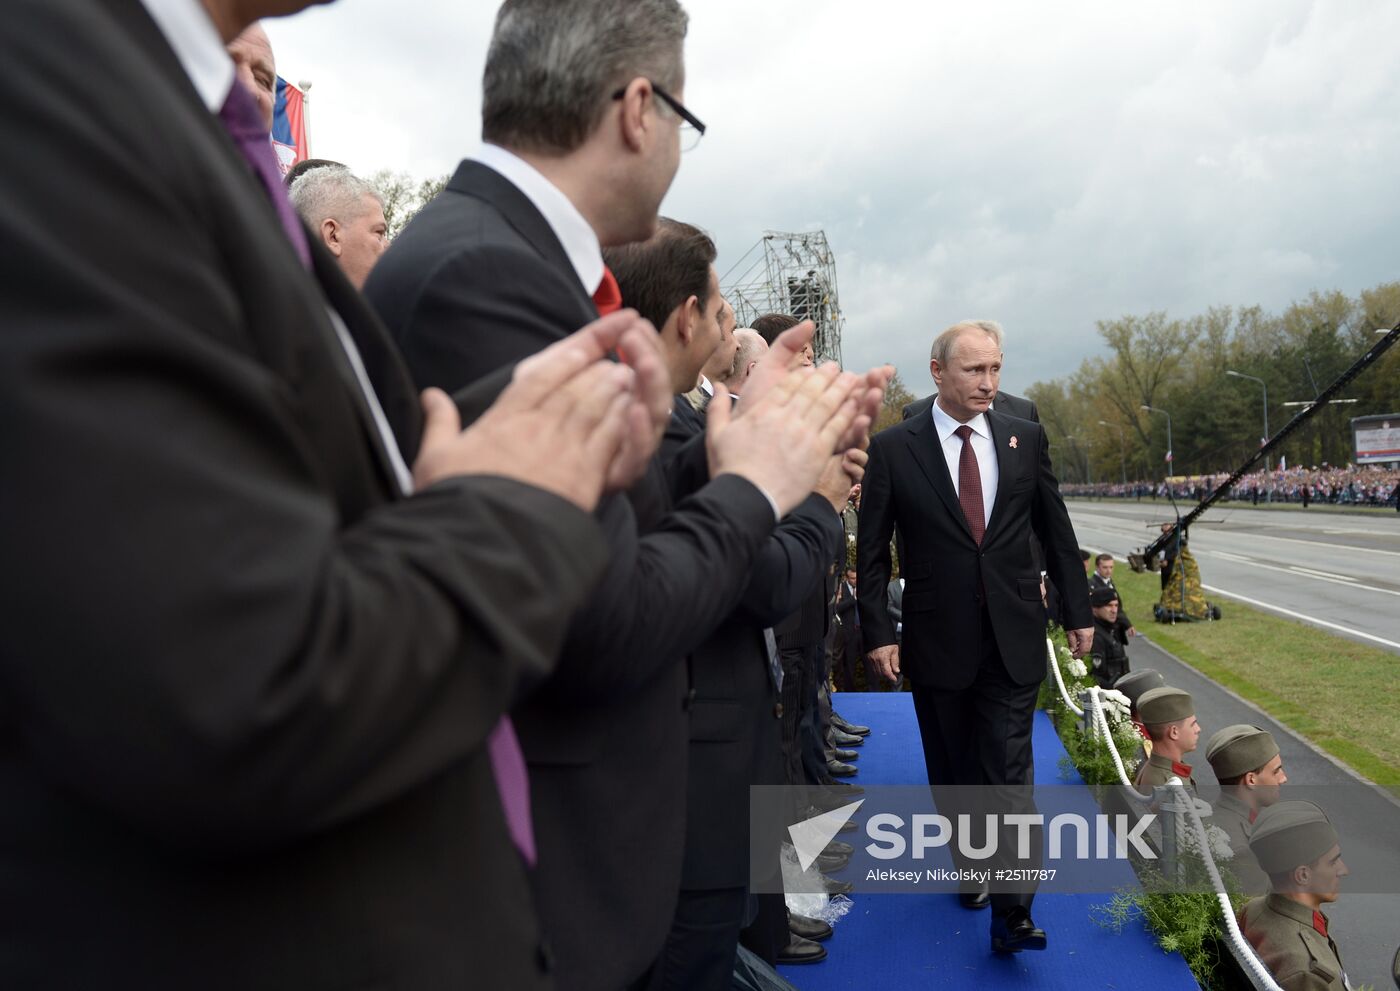 Vladimir Putin visits Serbia